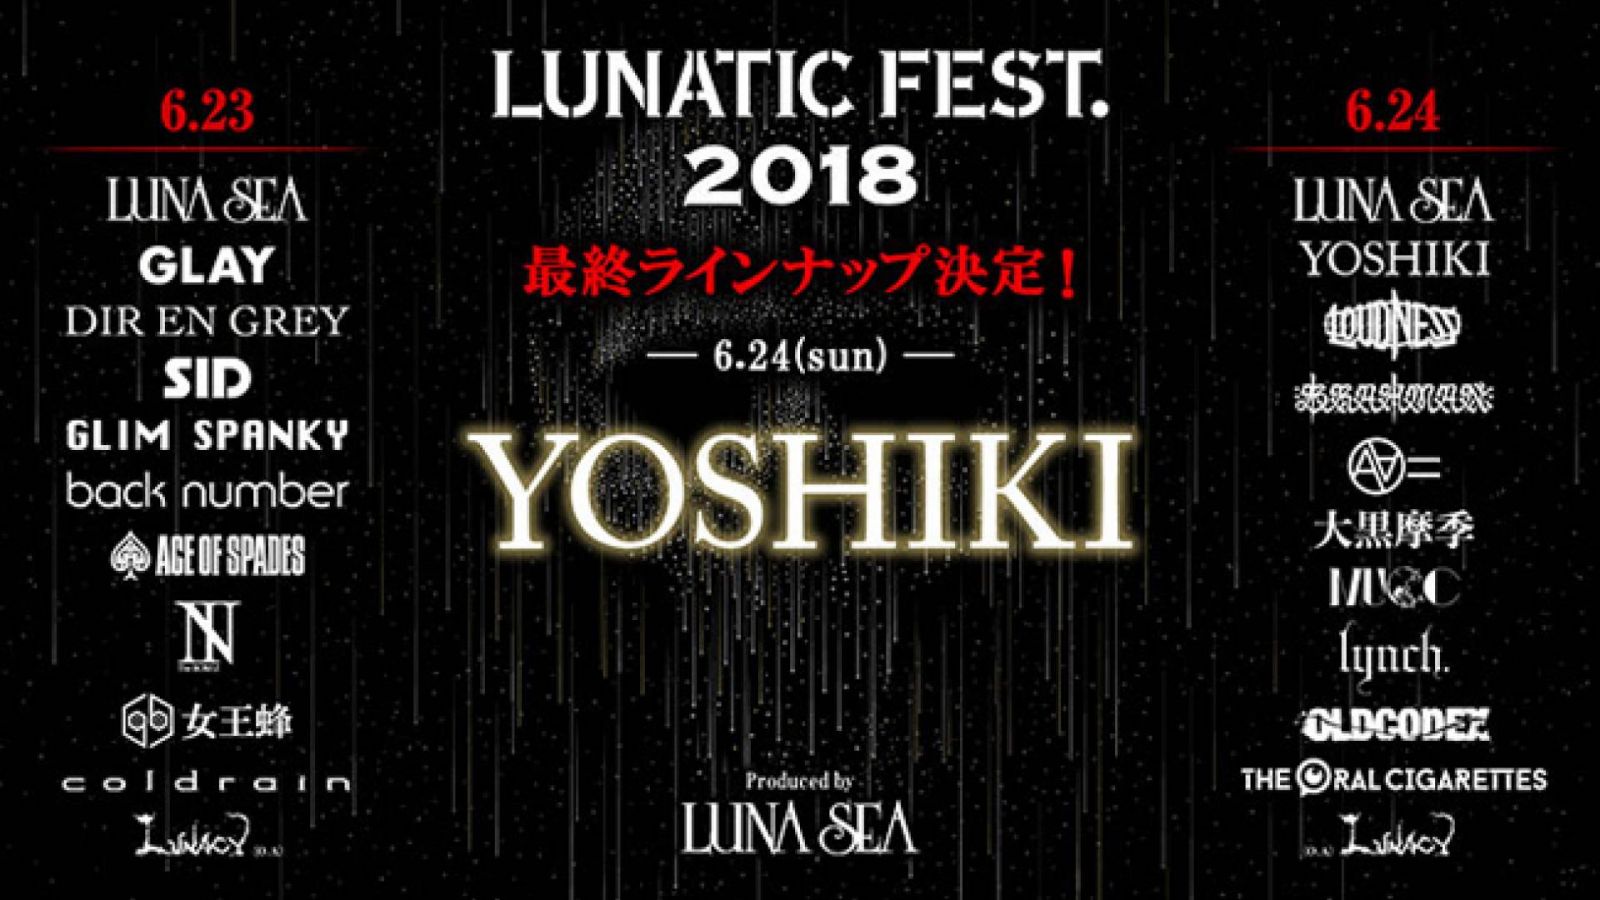 YOSHIKI Announces Solo Performance at LUNATIC FEST. 2018 © LUNATIC FEST. 2018